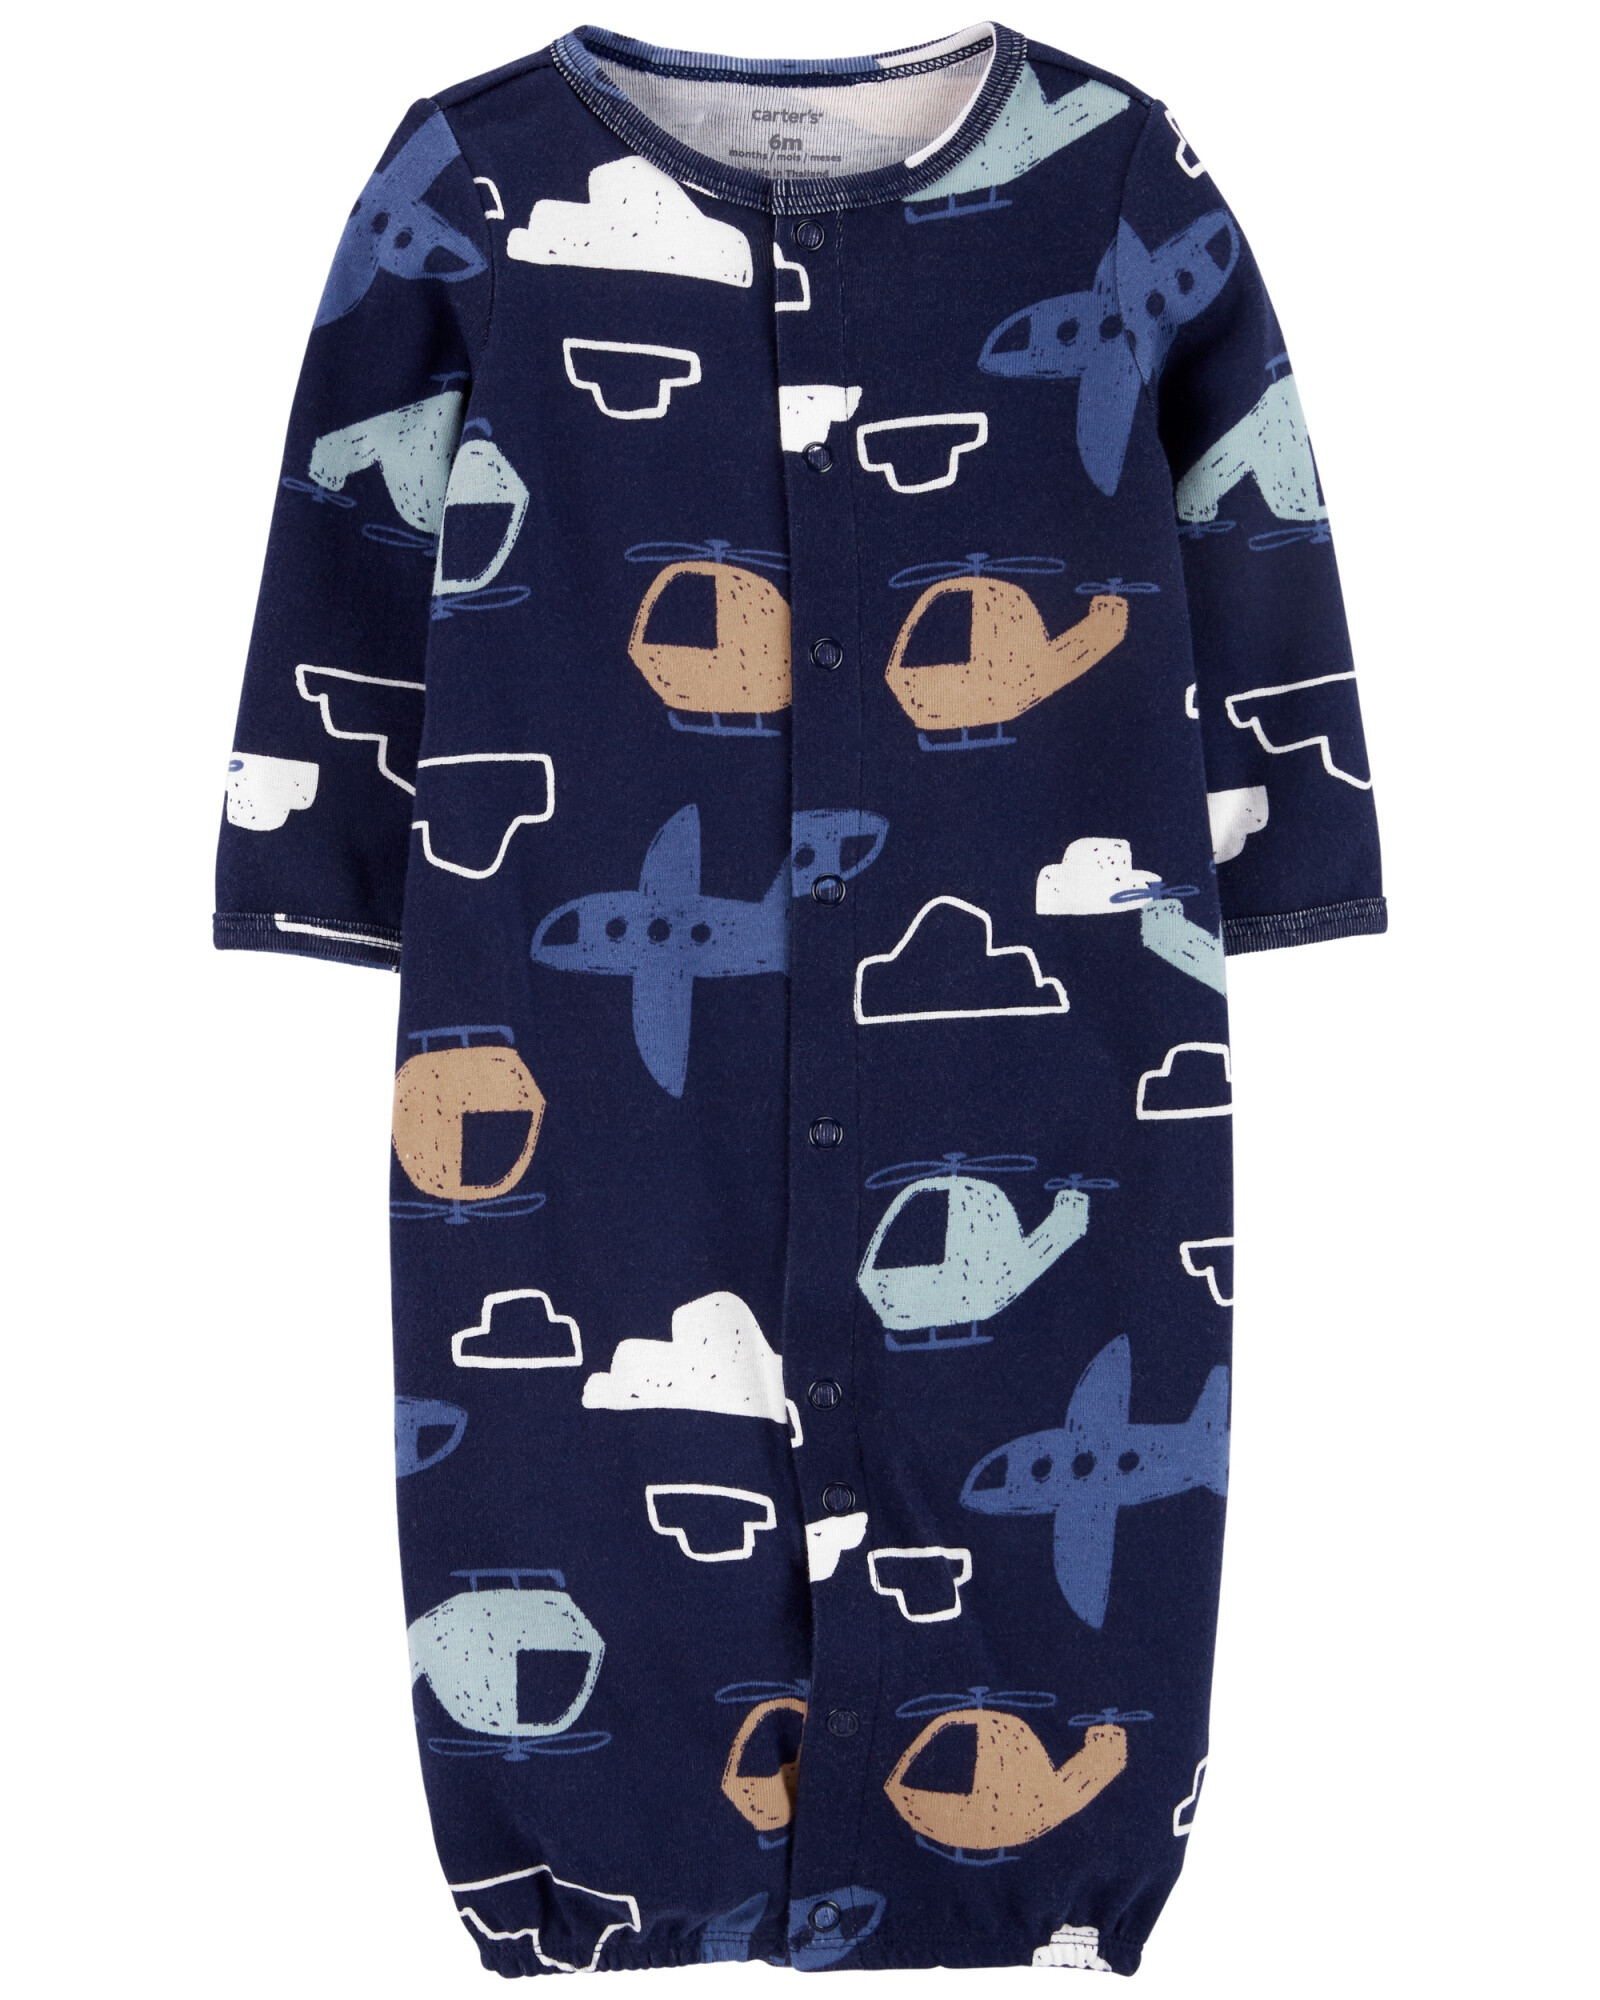 Pijama de algodón con gorro a juego y medias (Mercadería sin cambio) 0